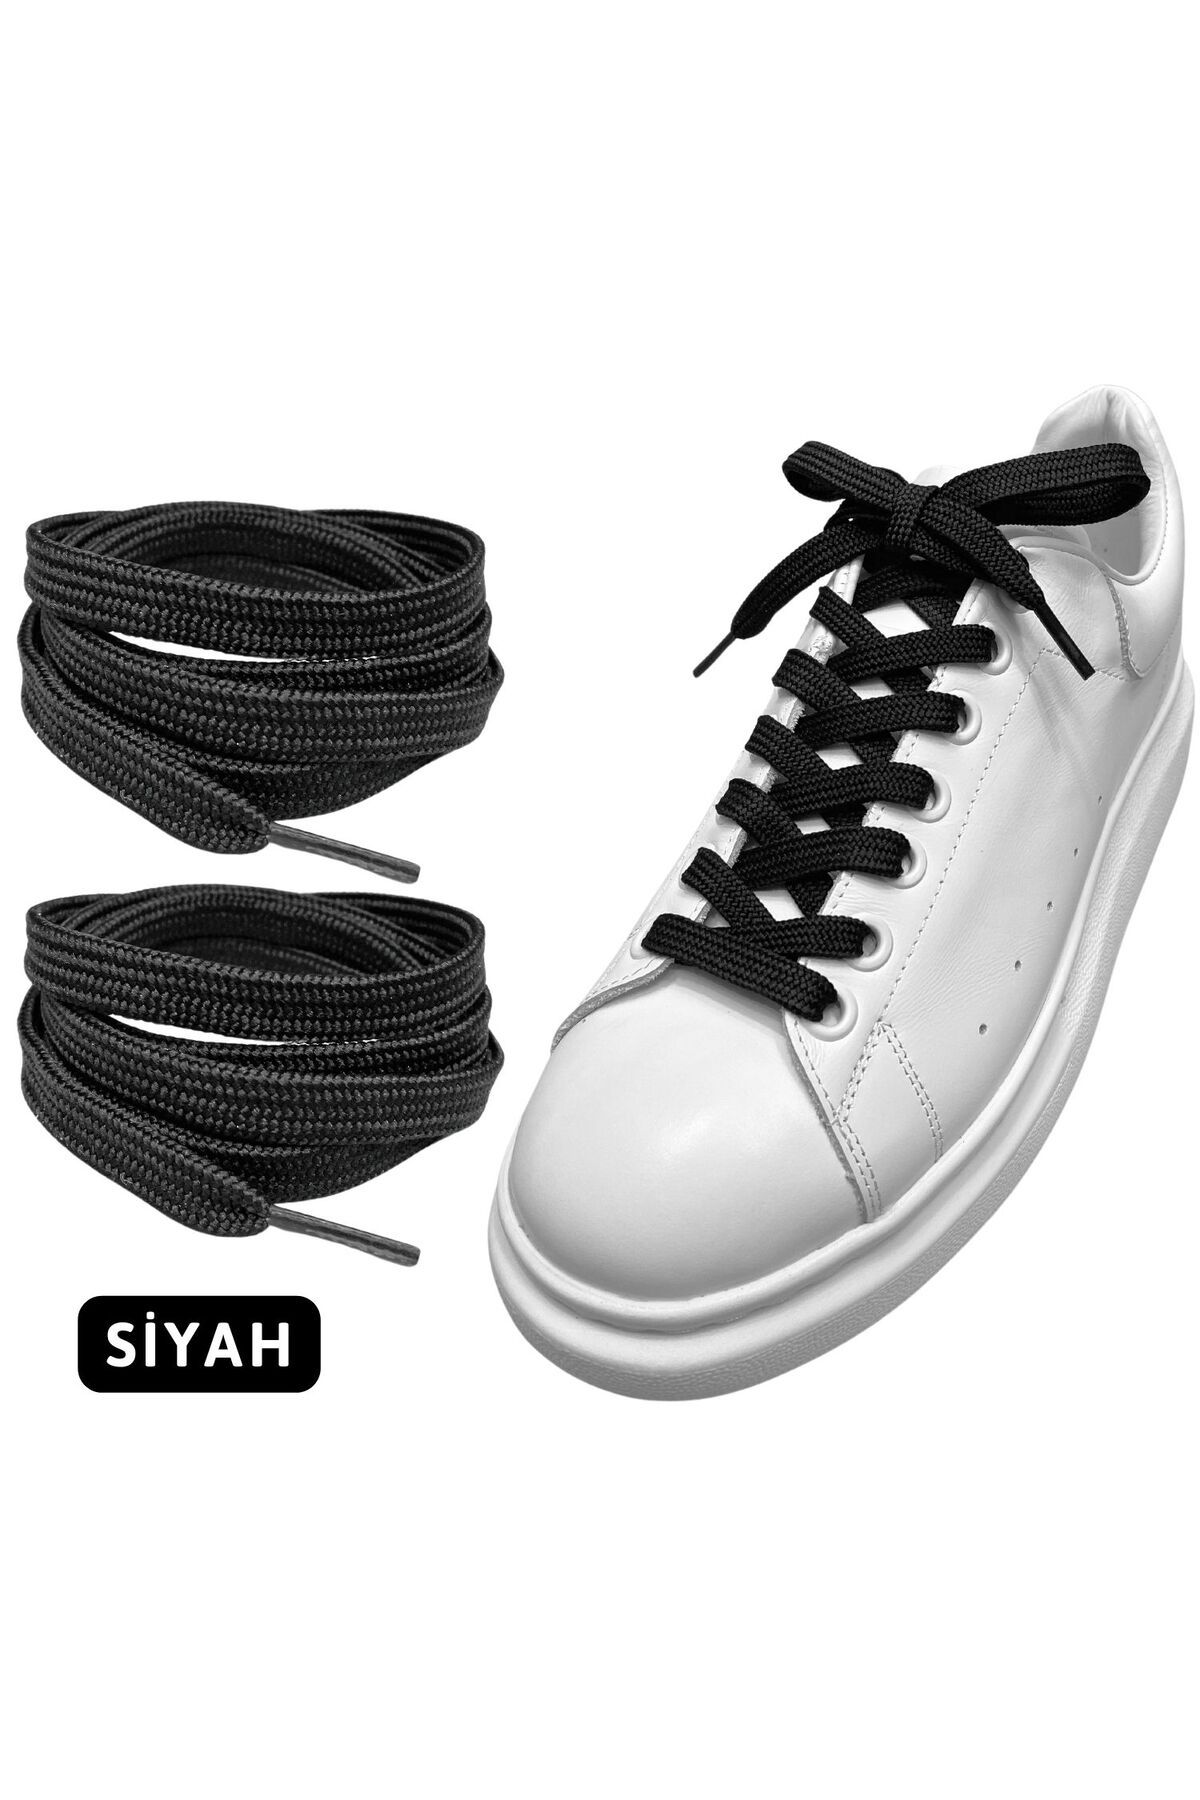 ipekbazaar Exclusice 120 Cm Siyah Yassı Spor Ayakkabı Bağcığı, Çift Katmanlı Örgülü Sneakers Bağcık, 1 Çift